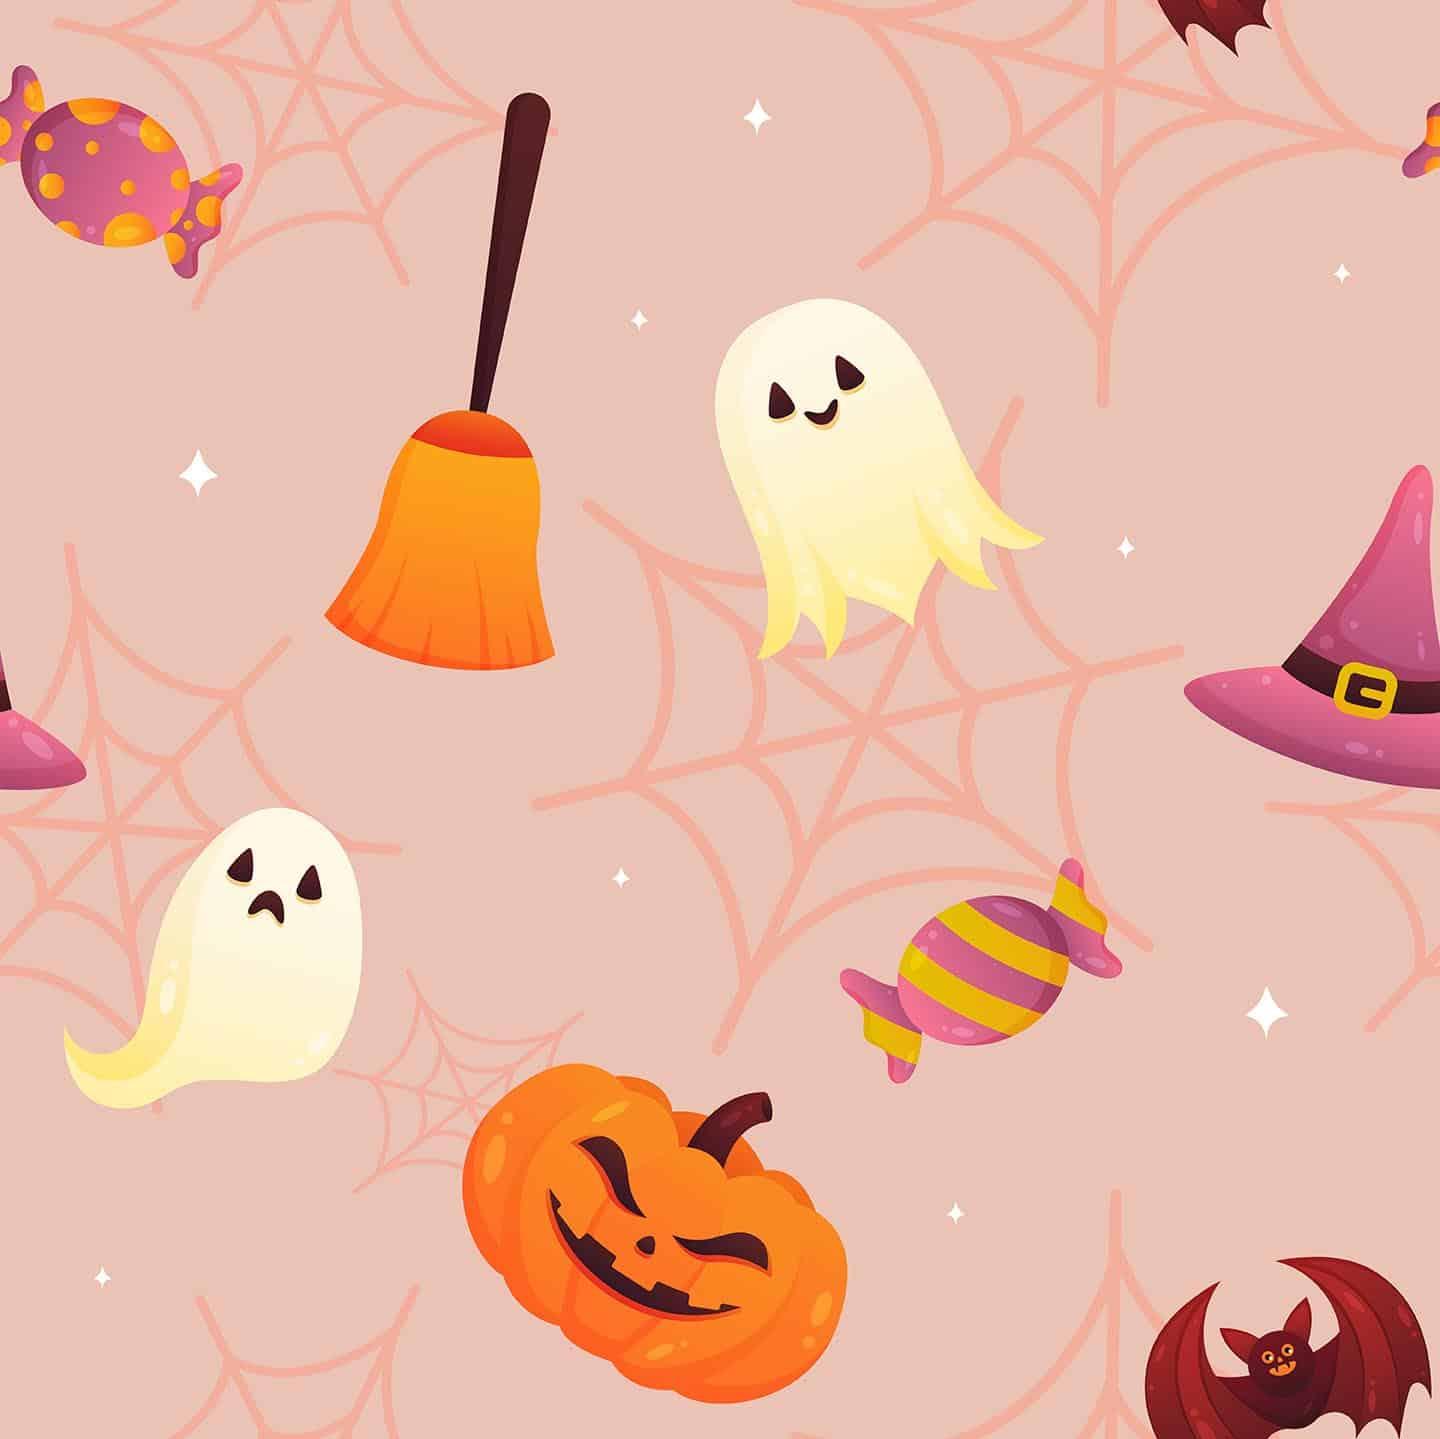 [54+] Cute Aesthetic Halloween Wallpapers | WallpaperSafari